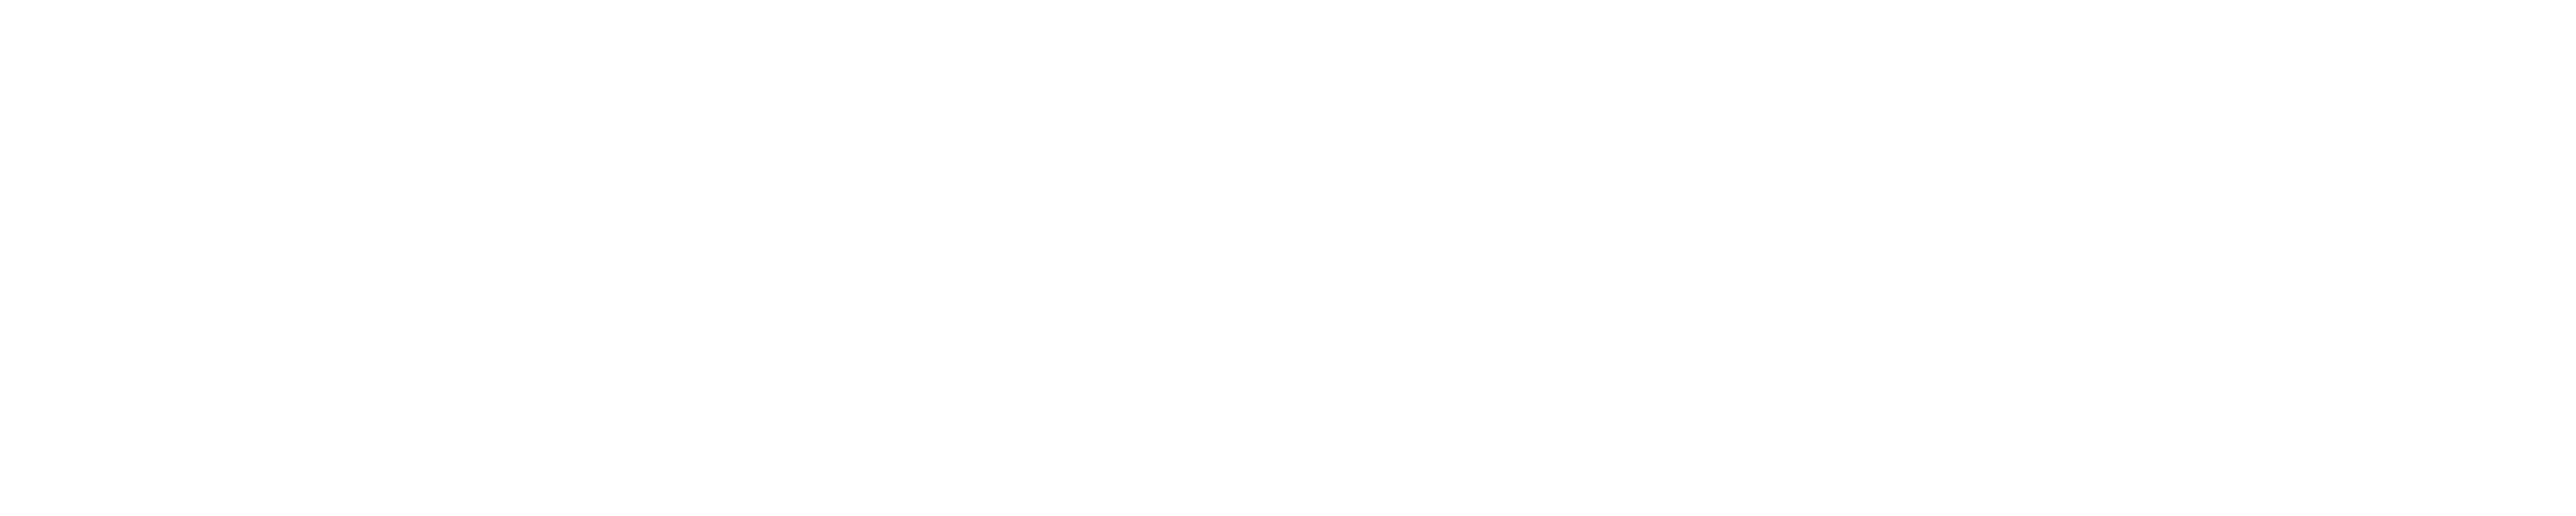 Eesti spordi lugu | Eesti Spordi- ja Olümpiamuuseum